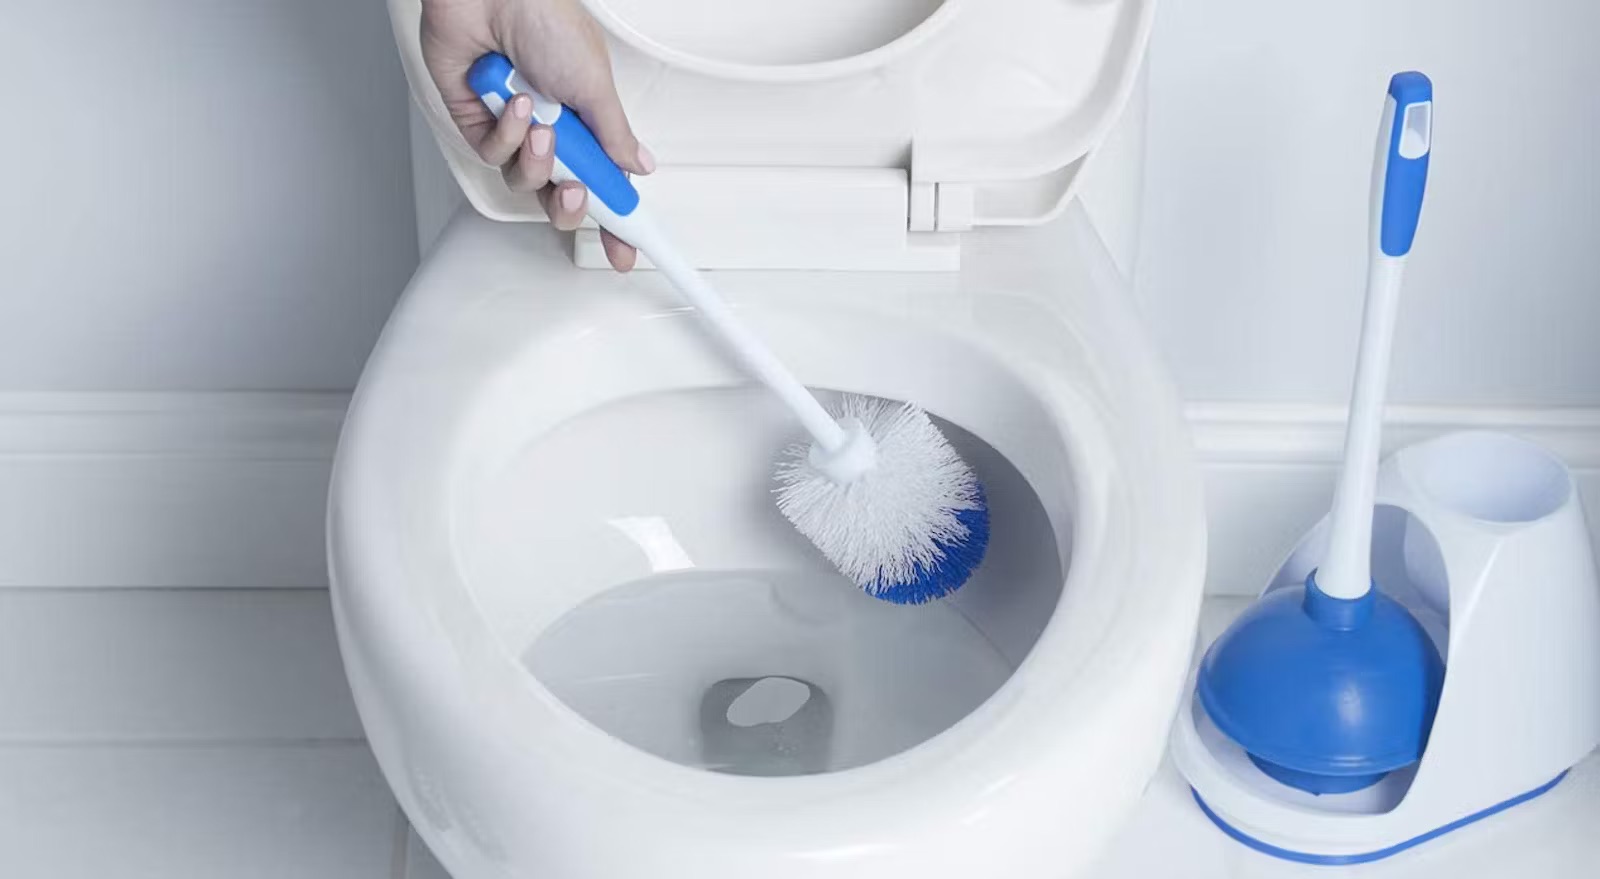 10 Best Toilet Brushes for 2023